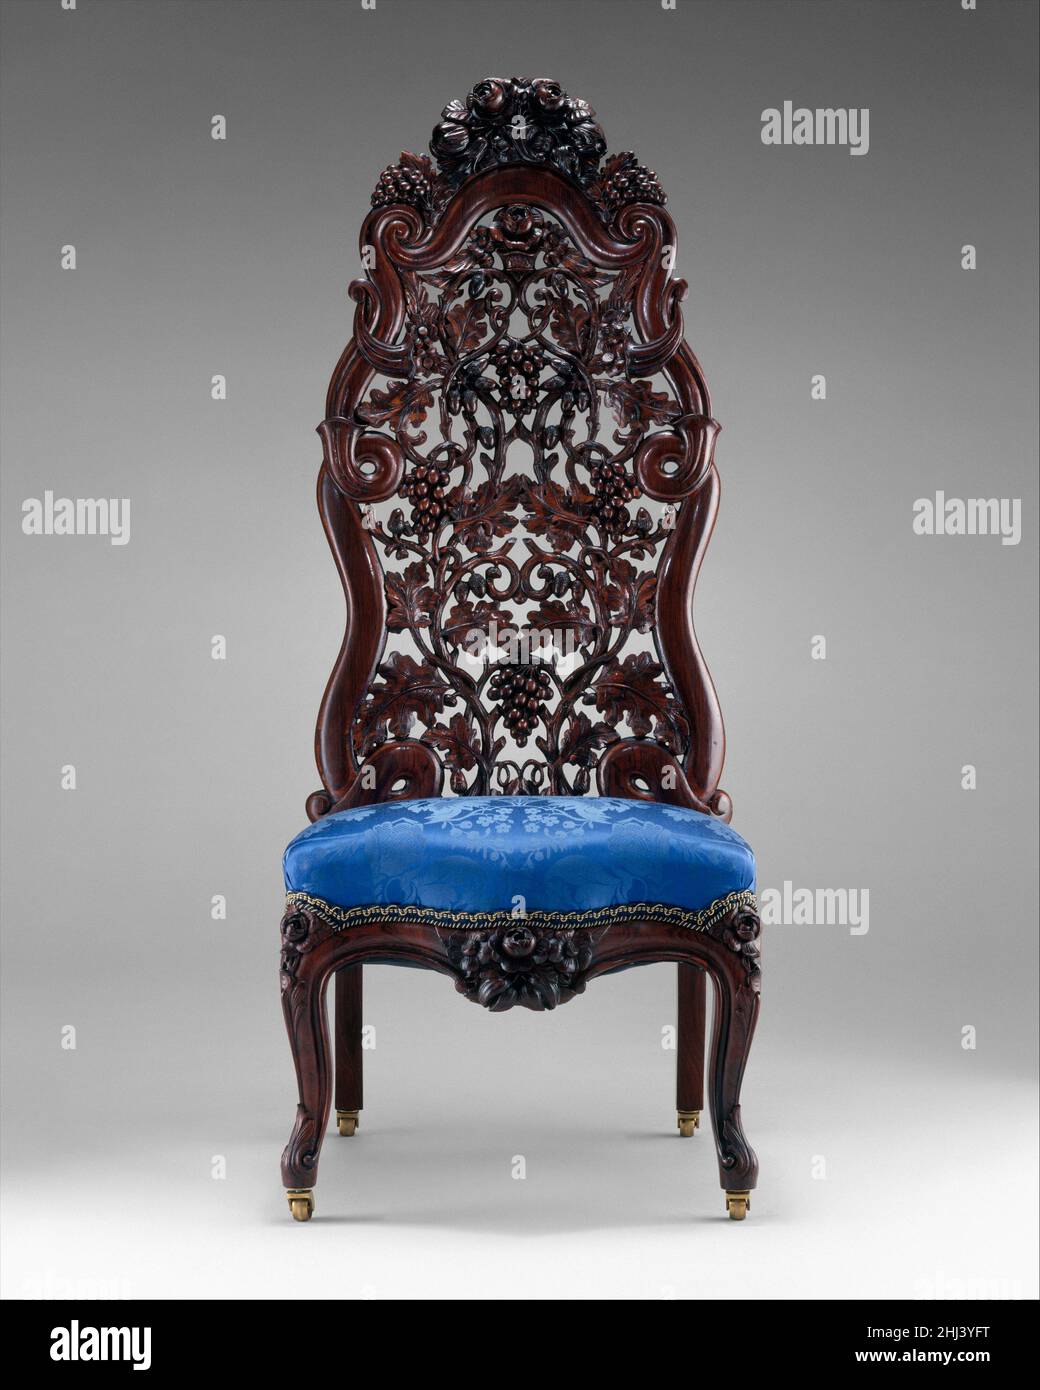 Fauteuil coulissant ca.1855 John Henry Belter allemand cette chaise,  finement sculptée avec des raisins sur la vigne, est un exemple  délicieusement fantaisiste du style de renouveau du rococo.Ces meubles ont  été décrits